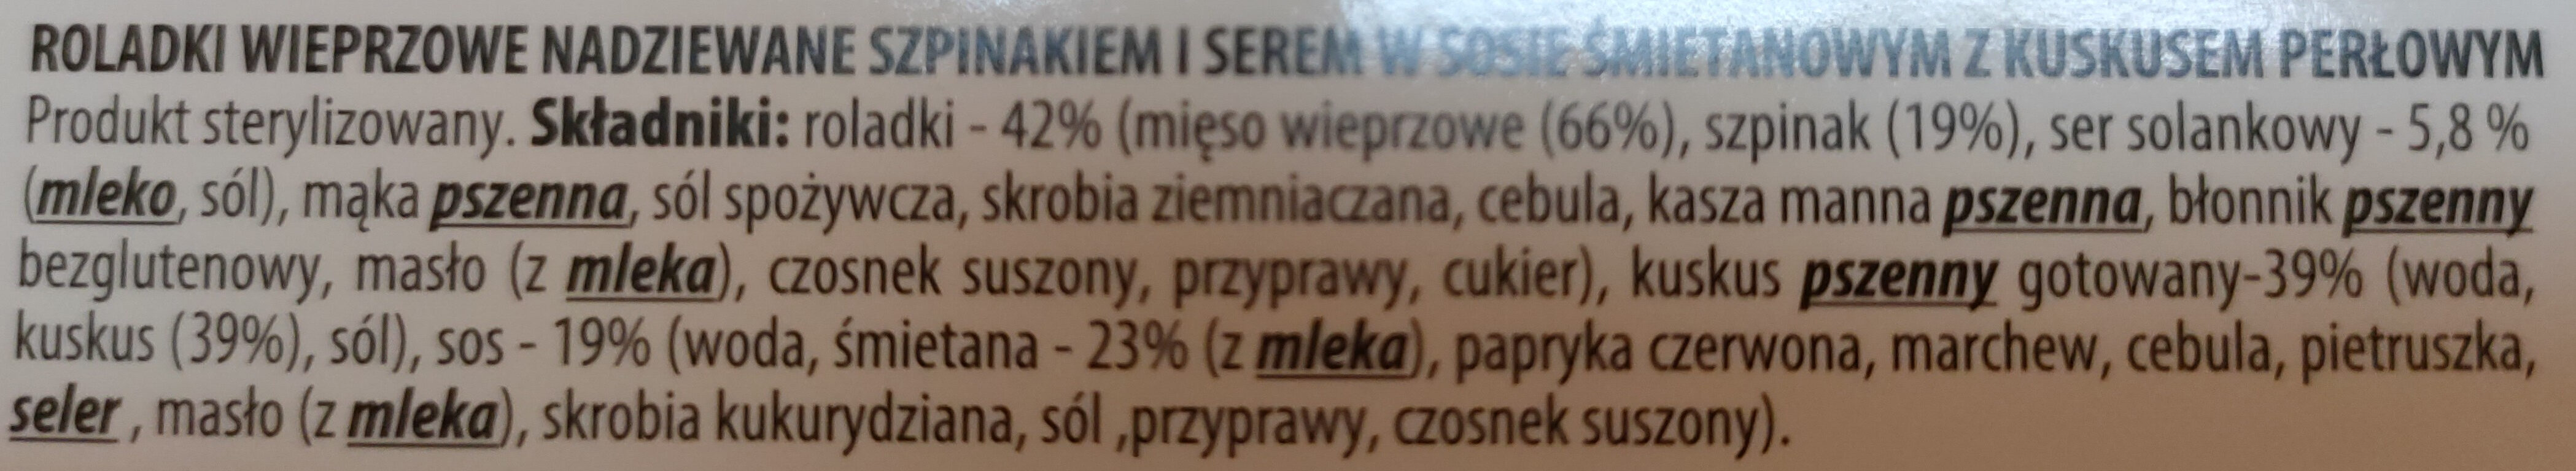 Sokołów premium Danie Gotowe Roladki wierprzowe - Ingrédients - pl